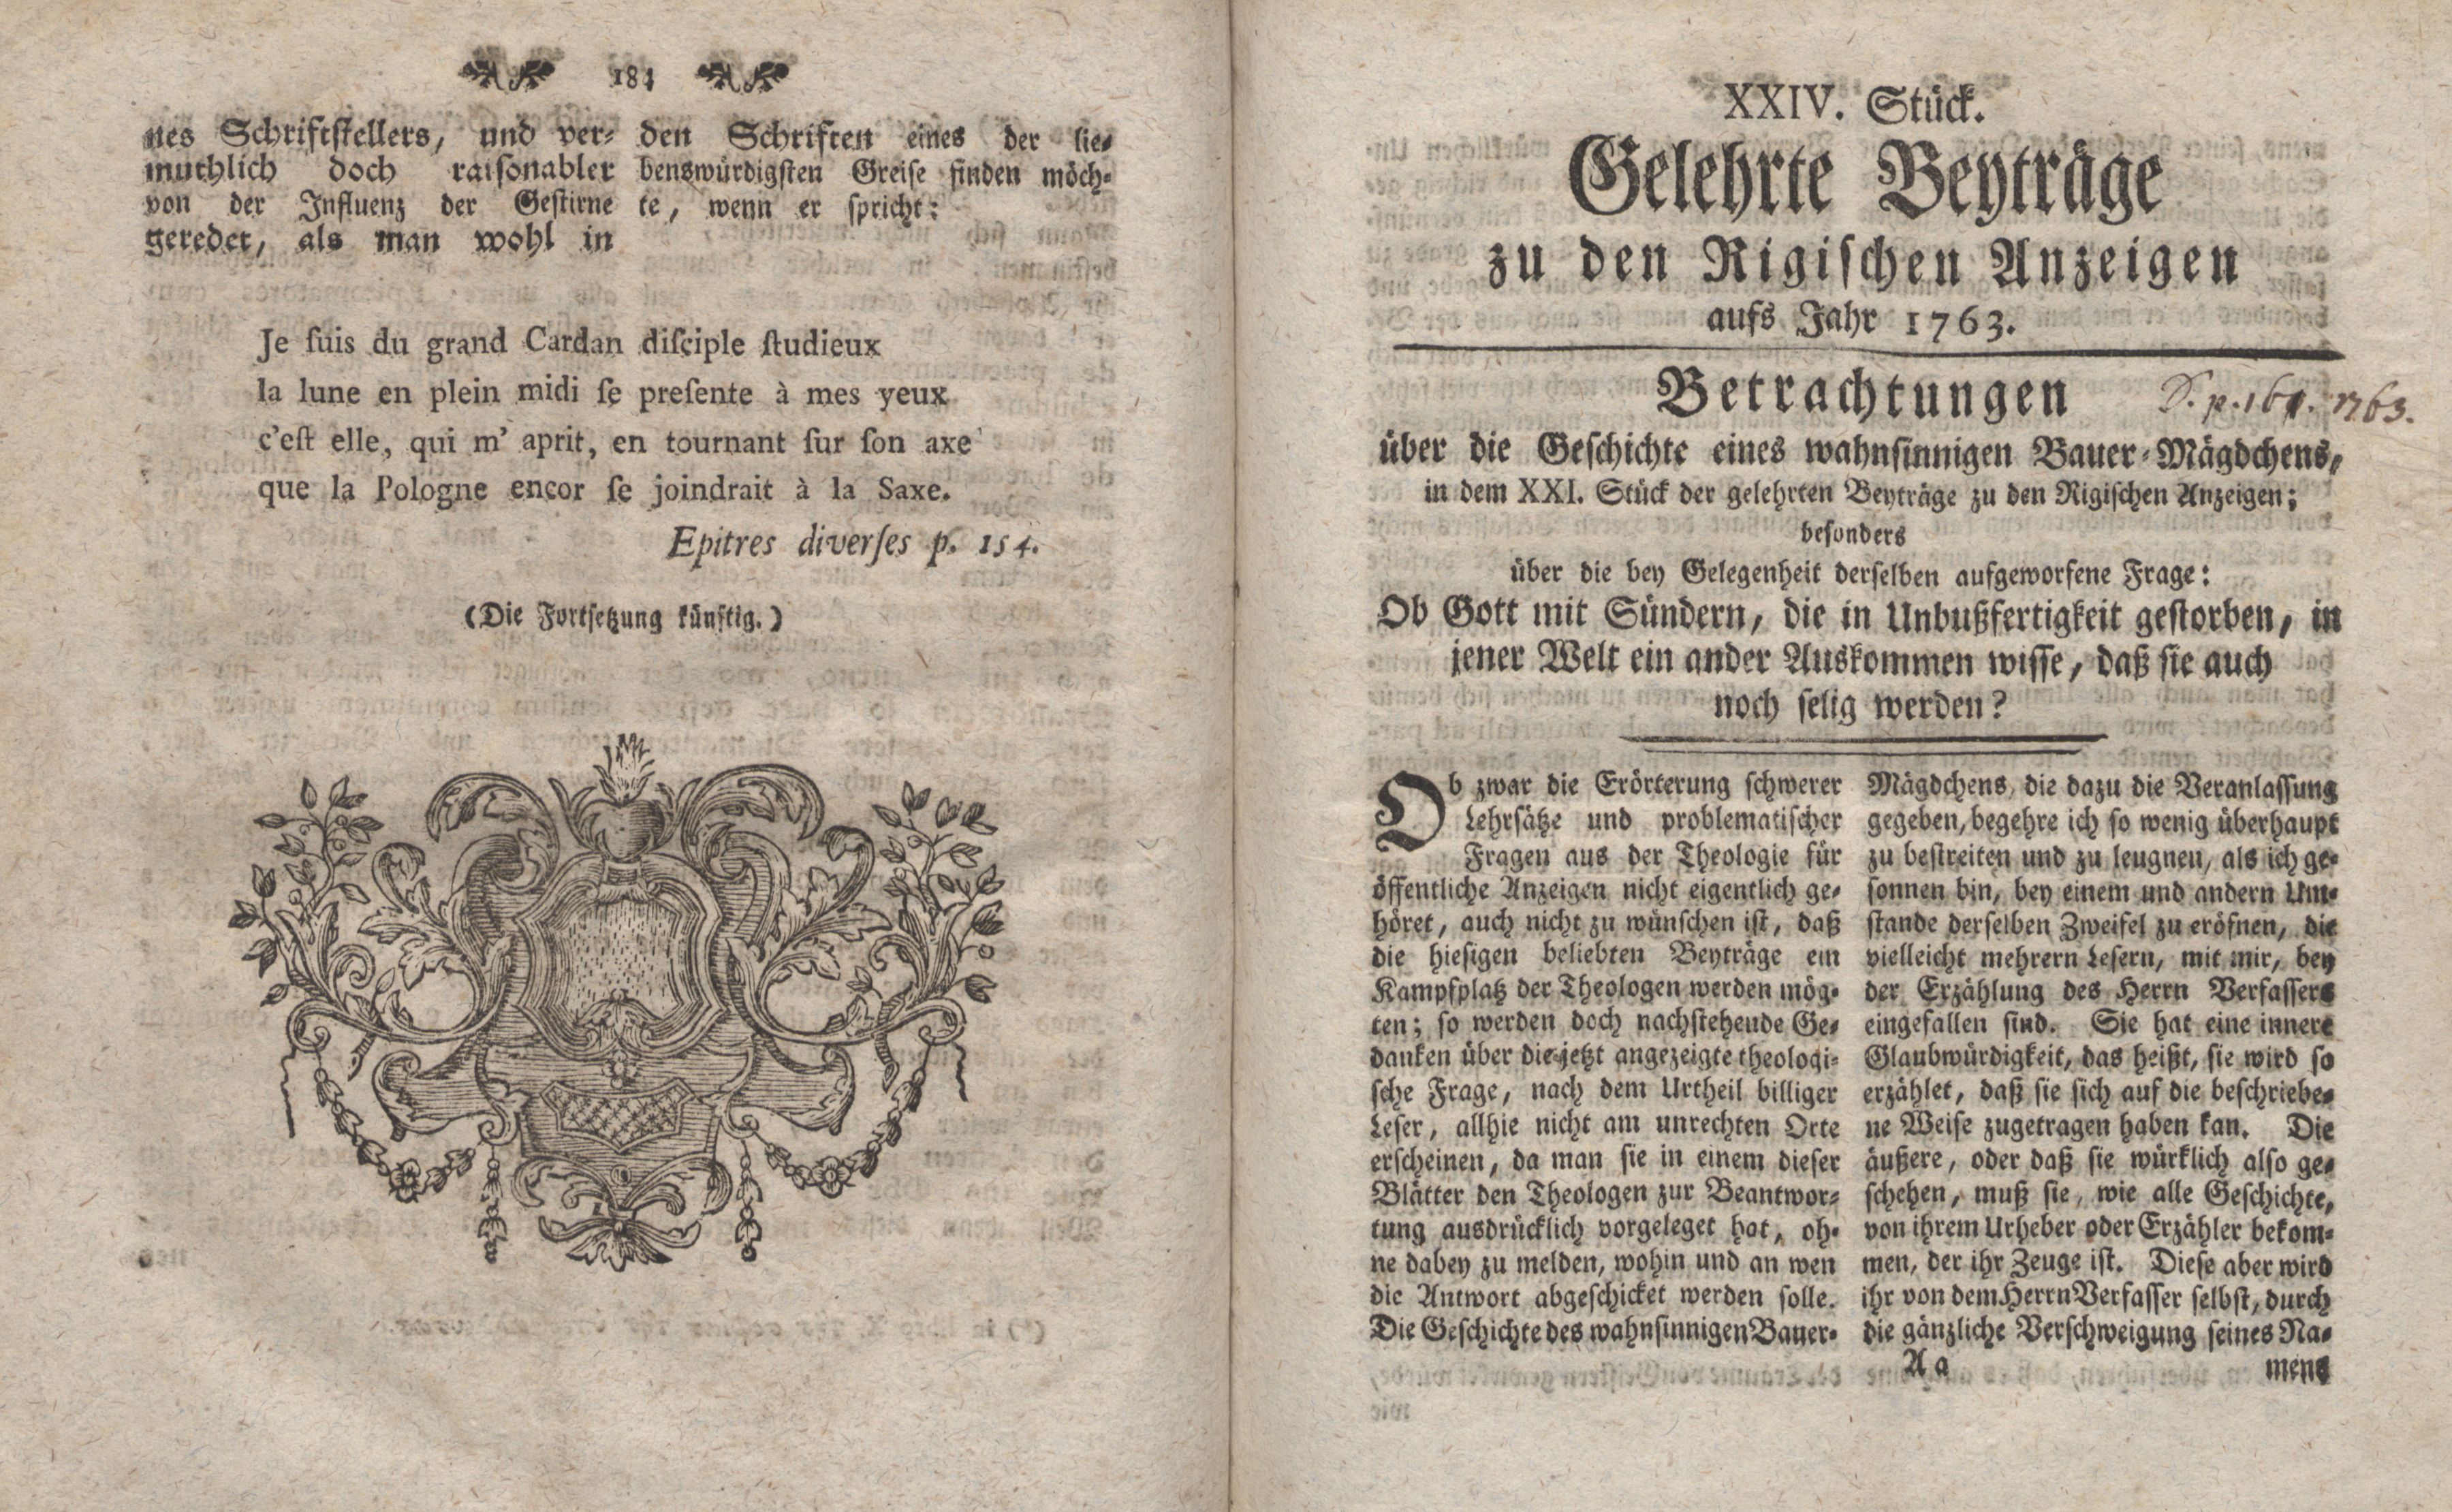 Betrachtungen über die Geschichte eines wahnsinnigen Bauer-Mägdchens [1] (1763) | 1. (184-185) Haupttext